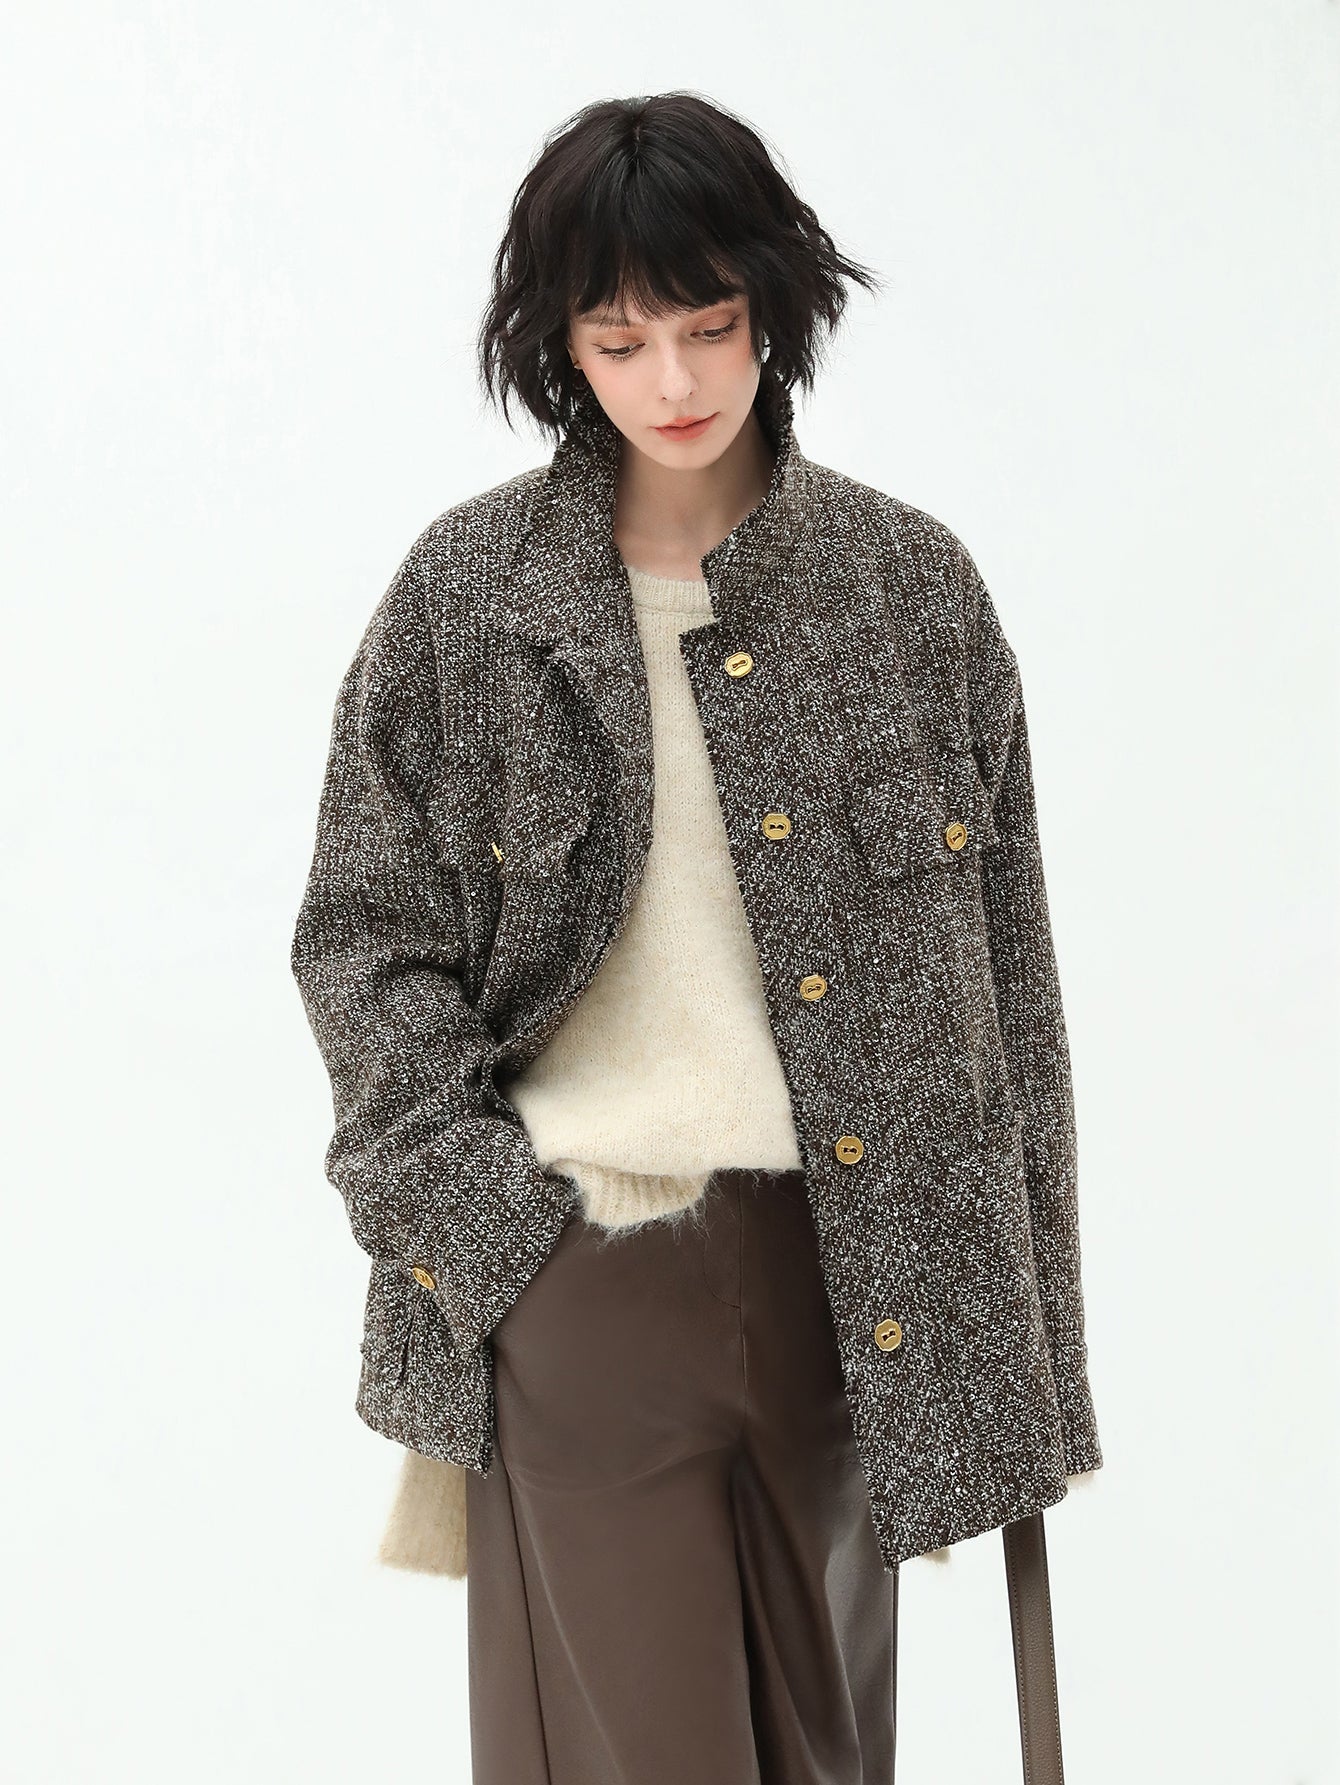 luxurious-sequin-knit-wool-coat-in-mocha_all_mocha_3.jpg